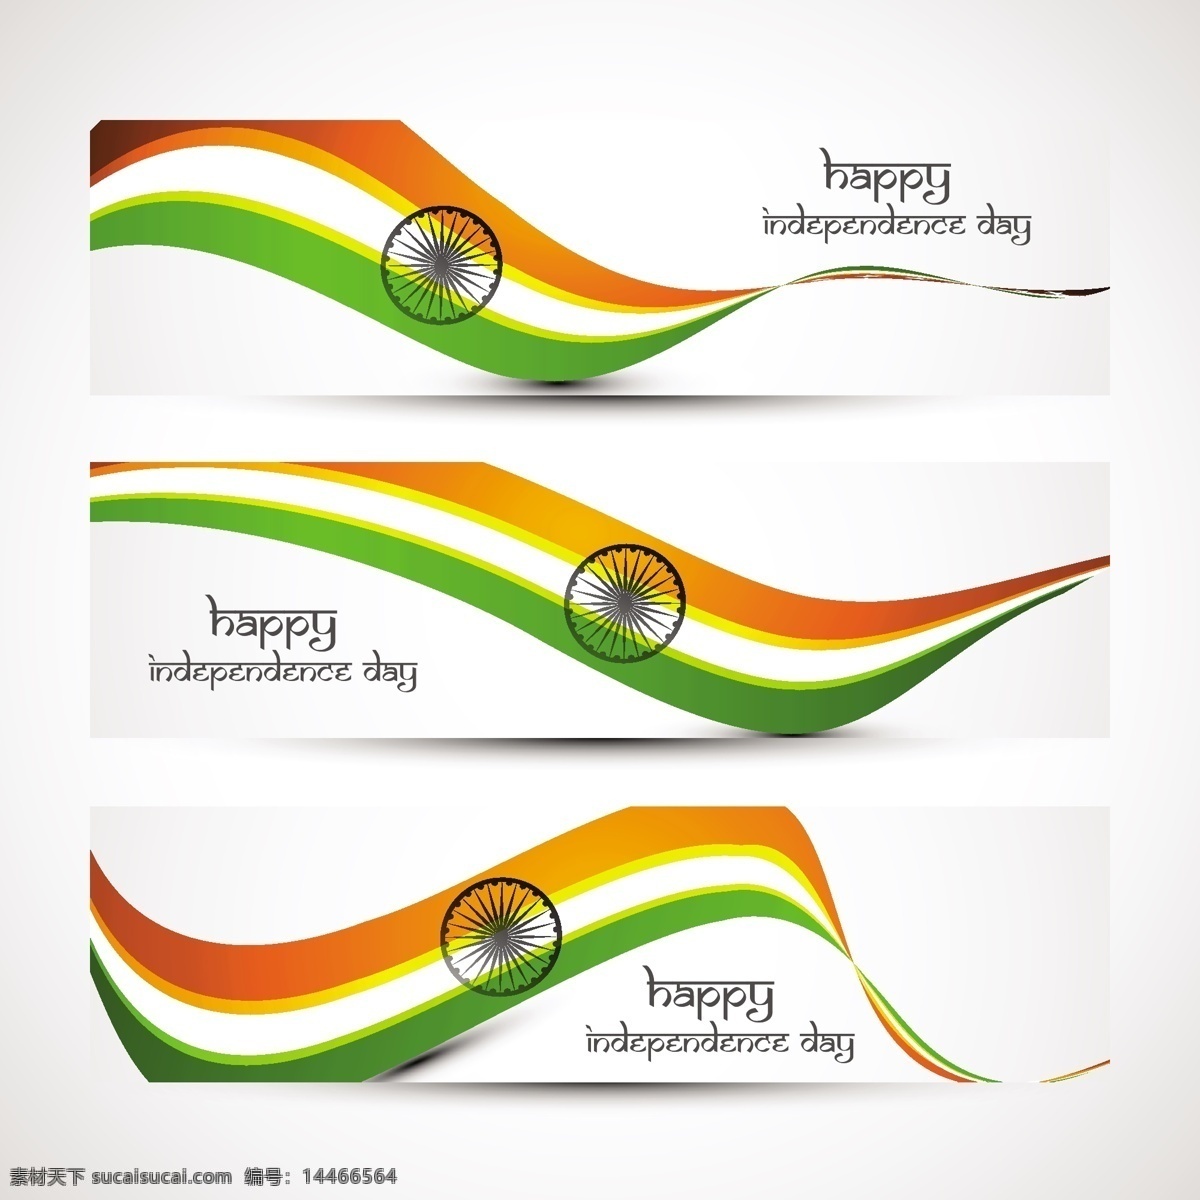 印度标志集 旗帜 抽象 网络 印度 节日 头 车轮 和平 印度国旗 独立日 国家 网络旗帜 自由 一天 政府 波浪 设置 白色